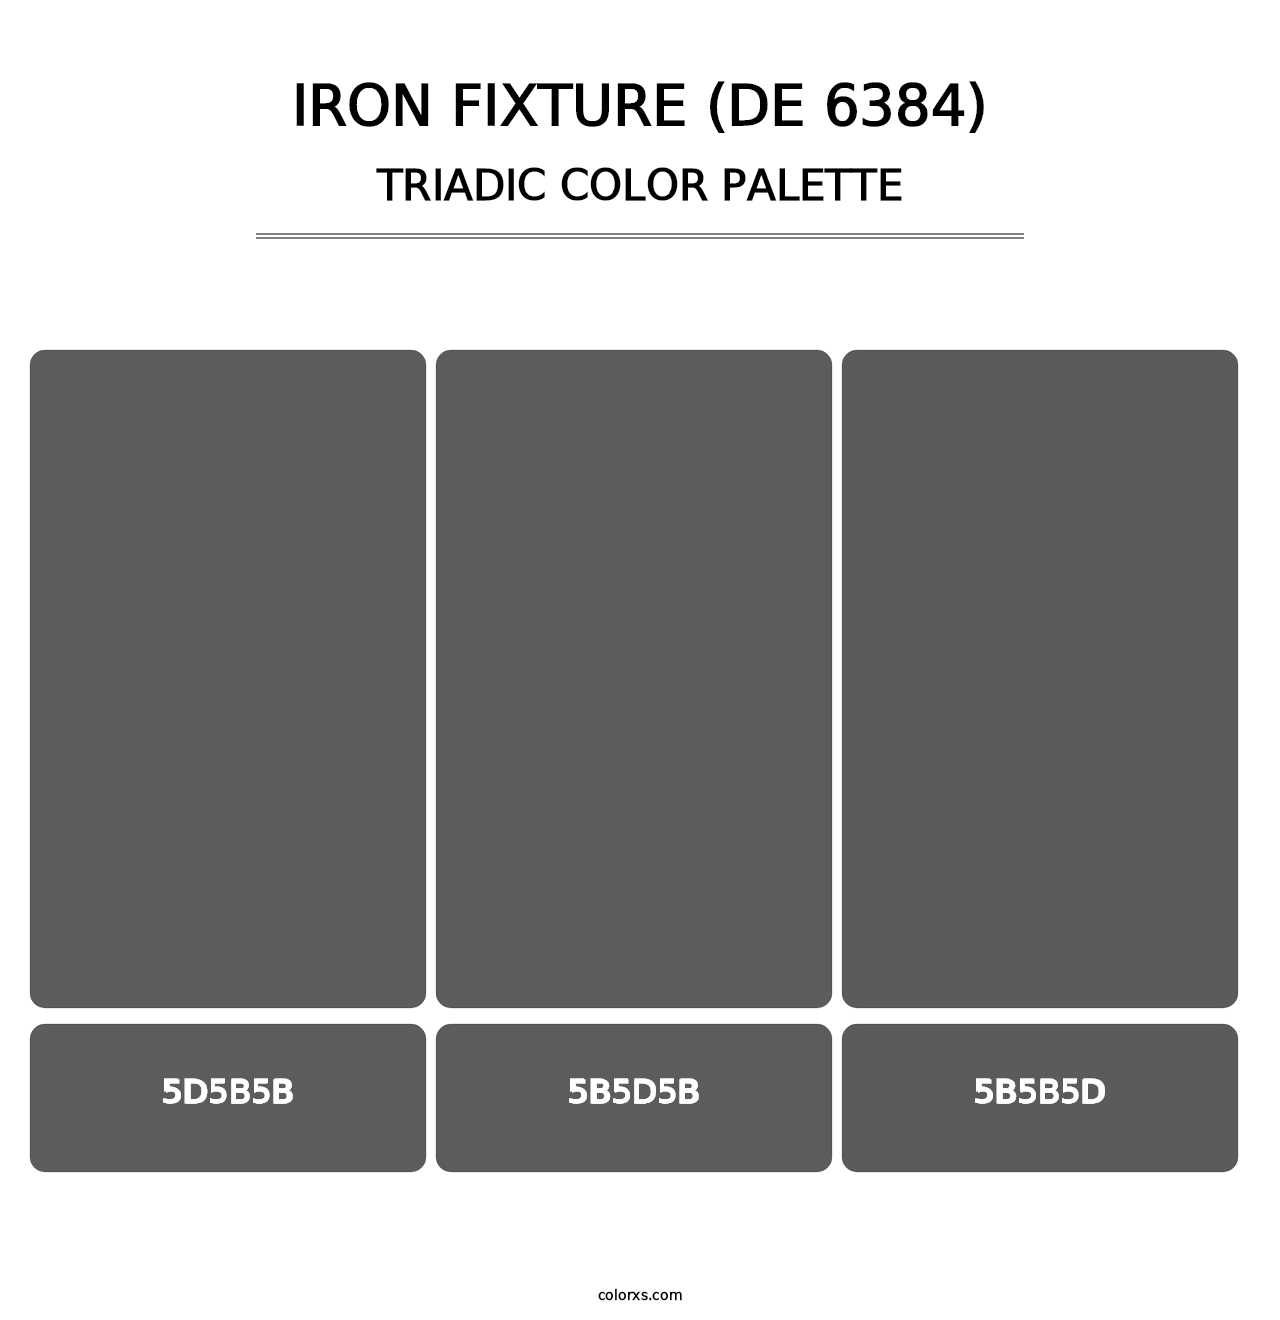 Iron Fixture (DE 6384) - Triadic Color Palette